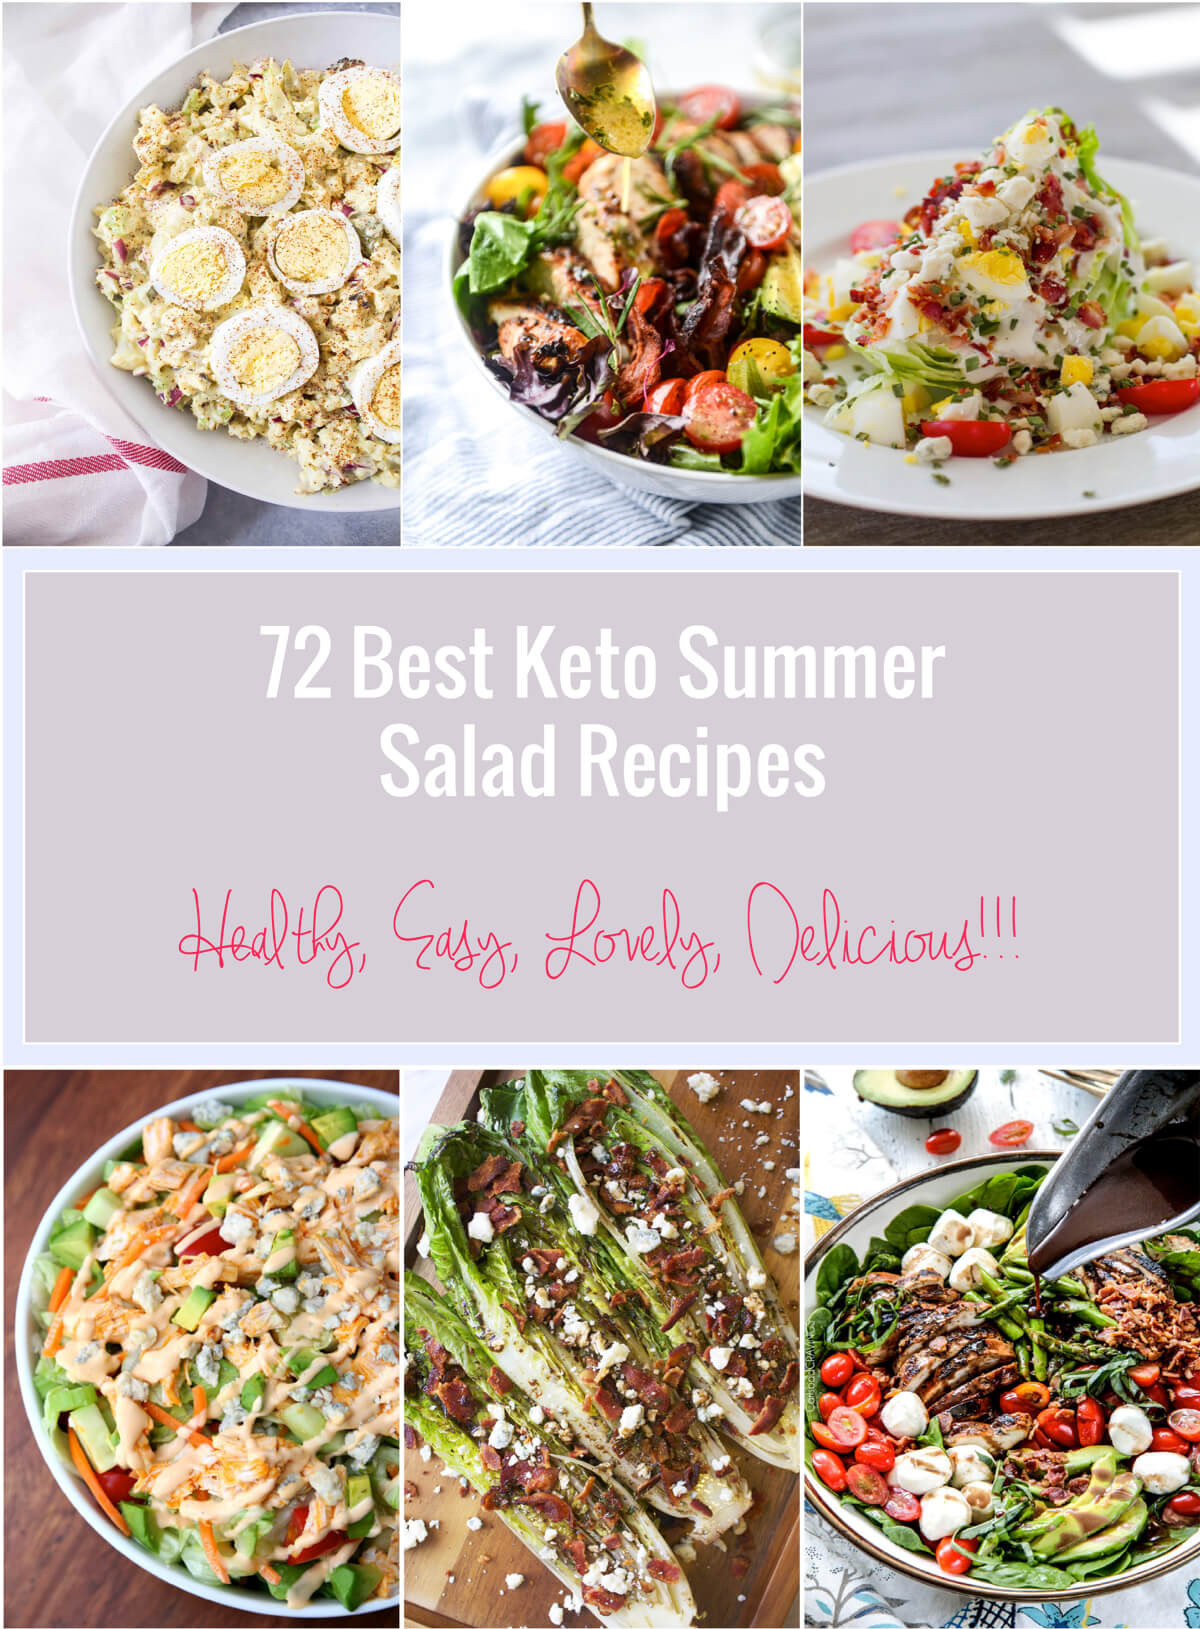 Summer Keto Recipes Dinner
 72 Best Keto Summer Salad Recipes